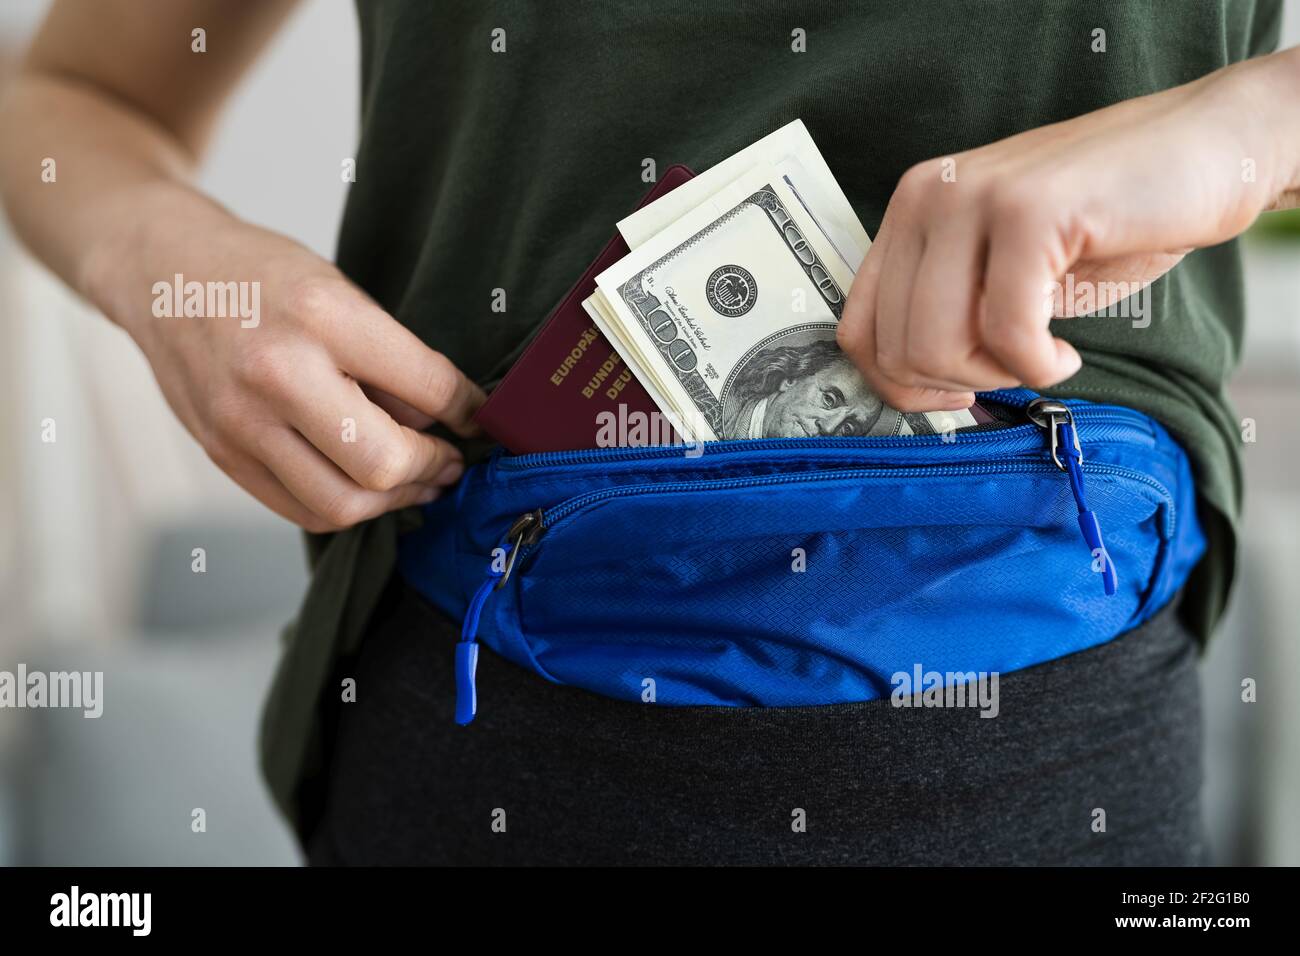 Sous vêtements porte-monnaie ceinture pour protéger la monnaie Photo Stock  - Alamy